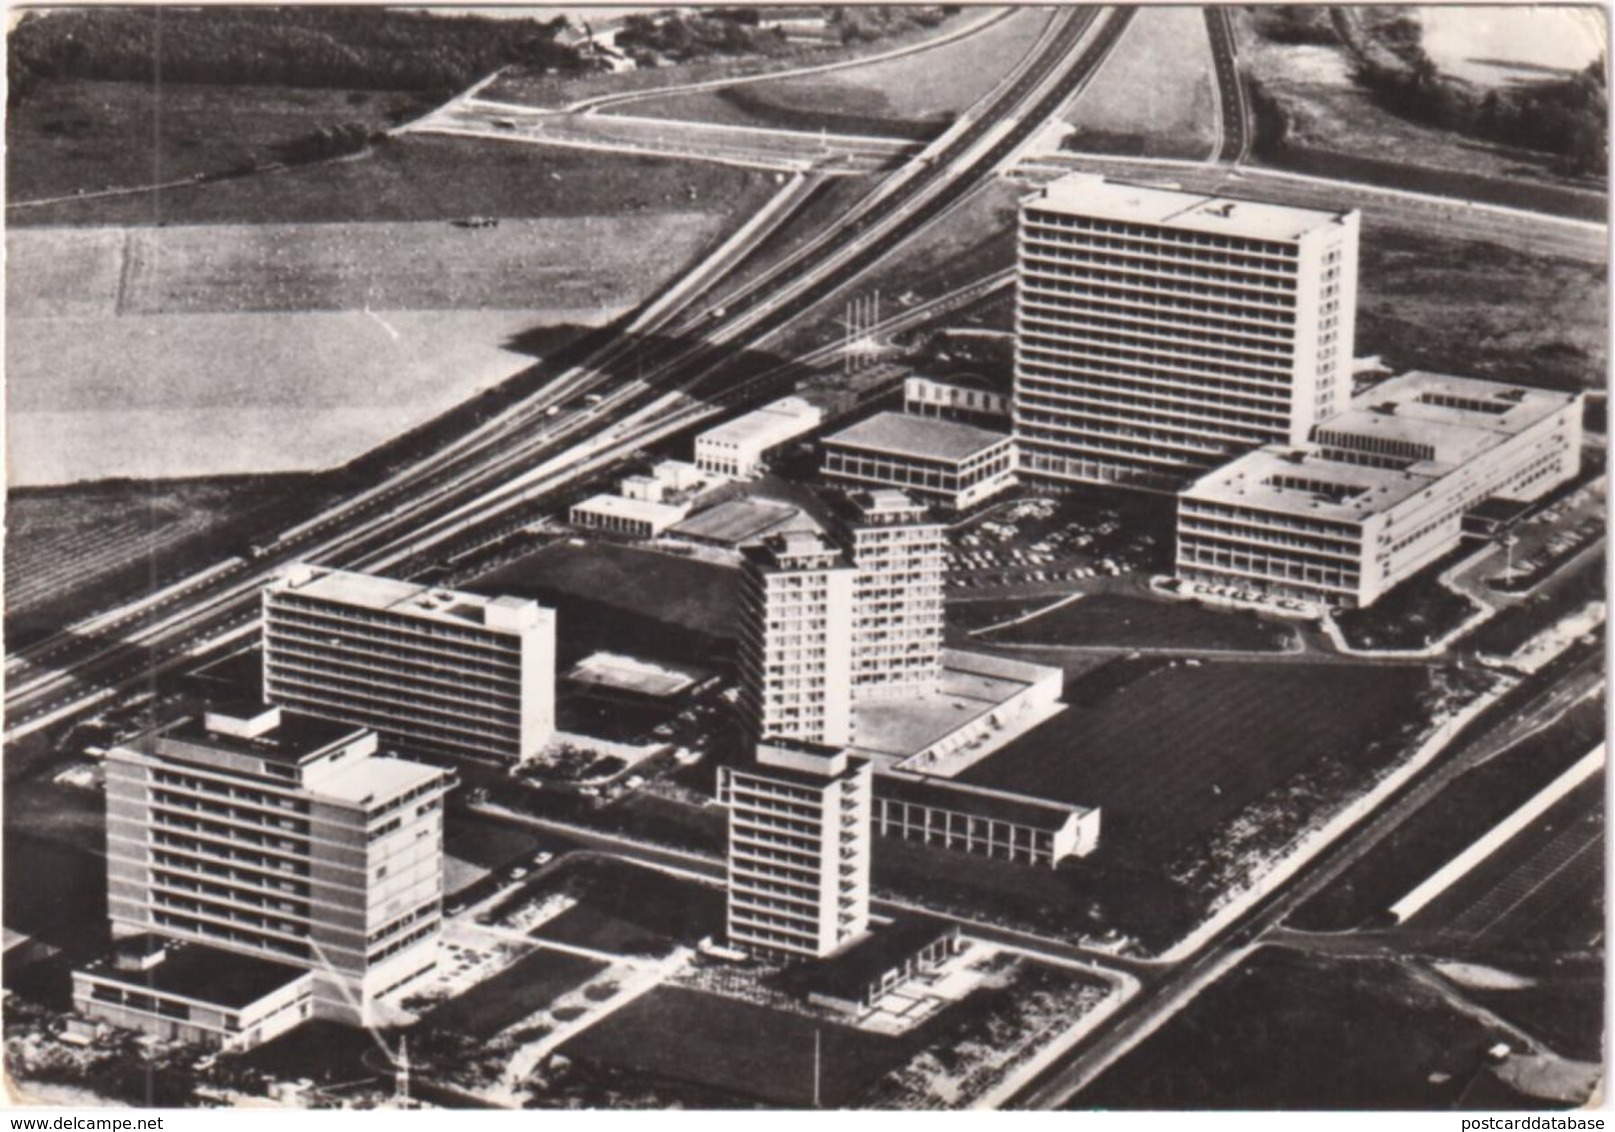 Heerlen - Verpleegkliniek De Wever Ziekenhuis - & Architecture, Air View, Hospital - Heerlen